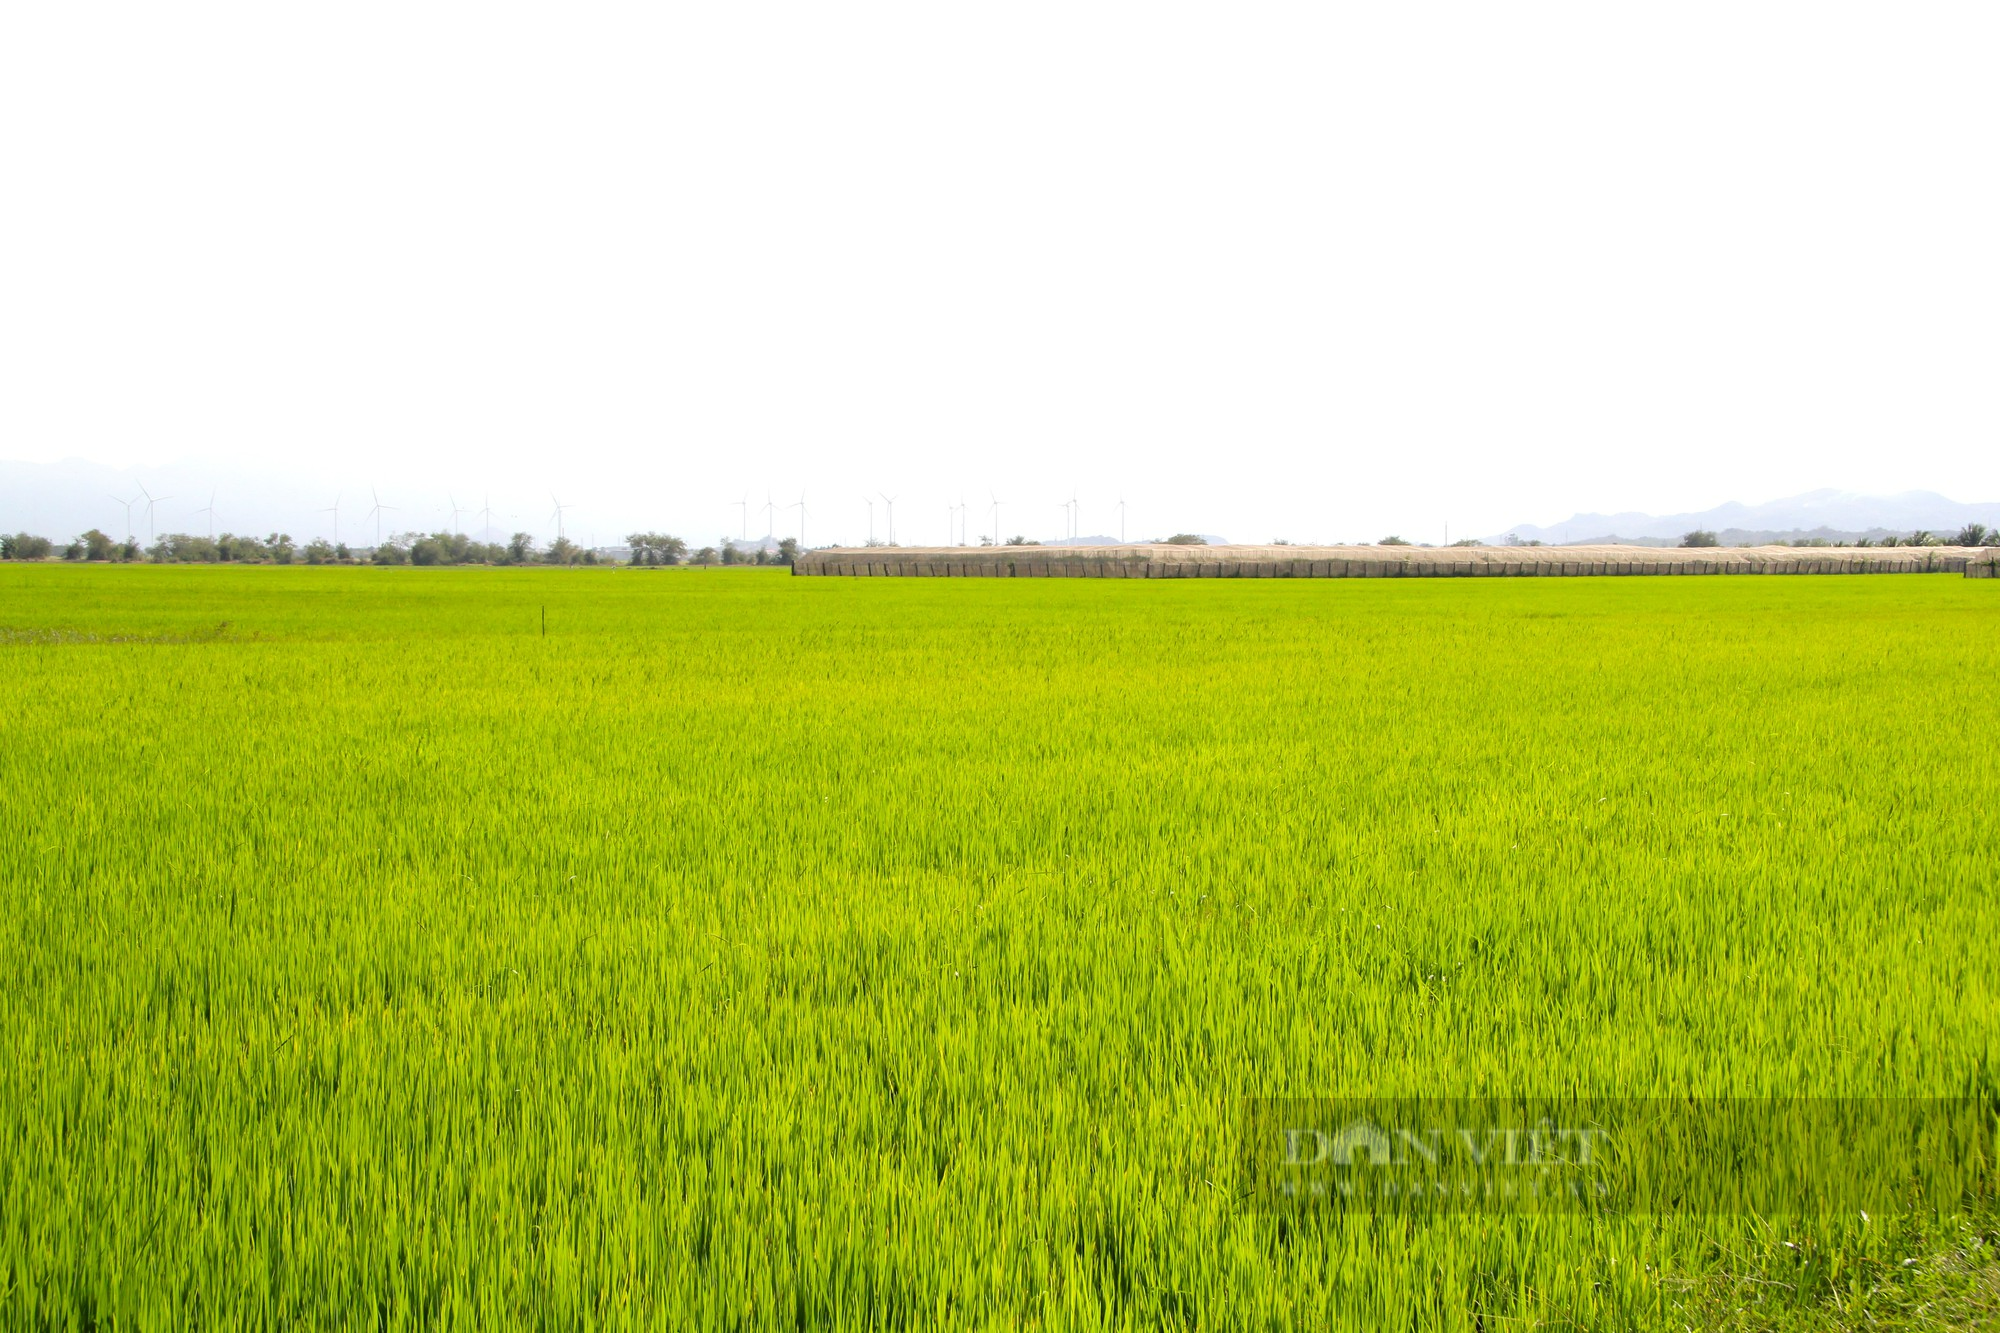 Trồng lúa thân thiện với môi trường cho hạt gạo ngon, năng suất tăng gần gấp đôi, nông dân nâng cao thu nhập - Ảnh 6.